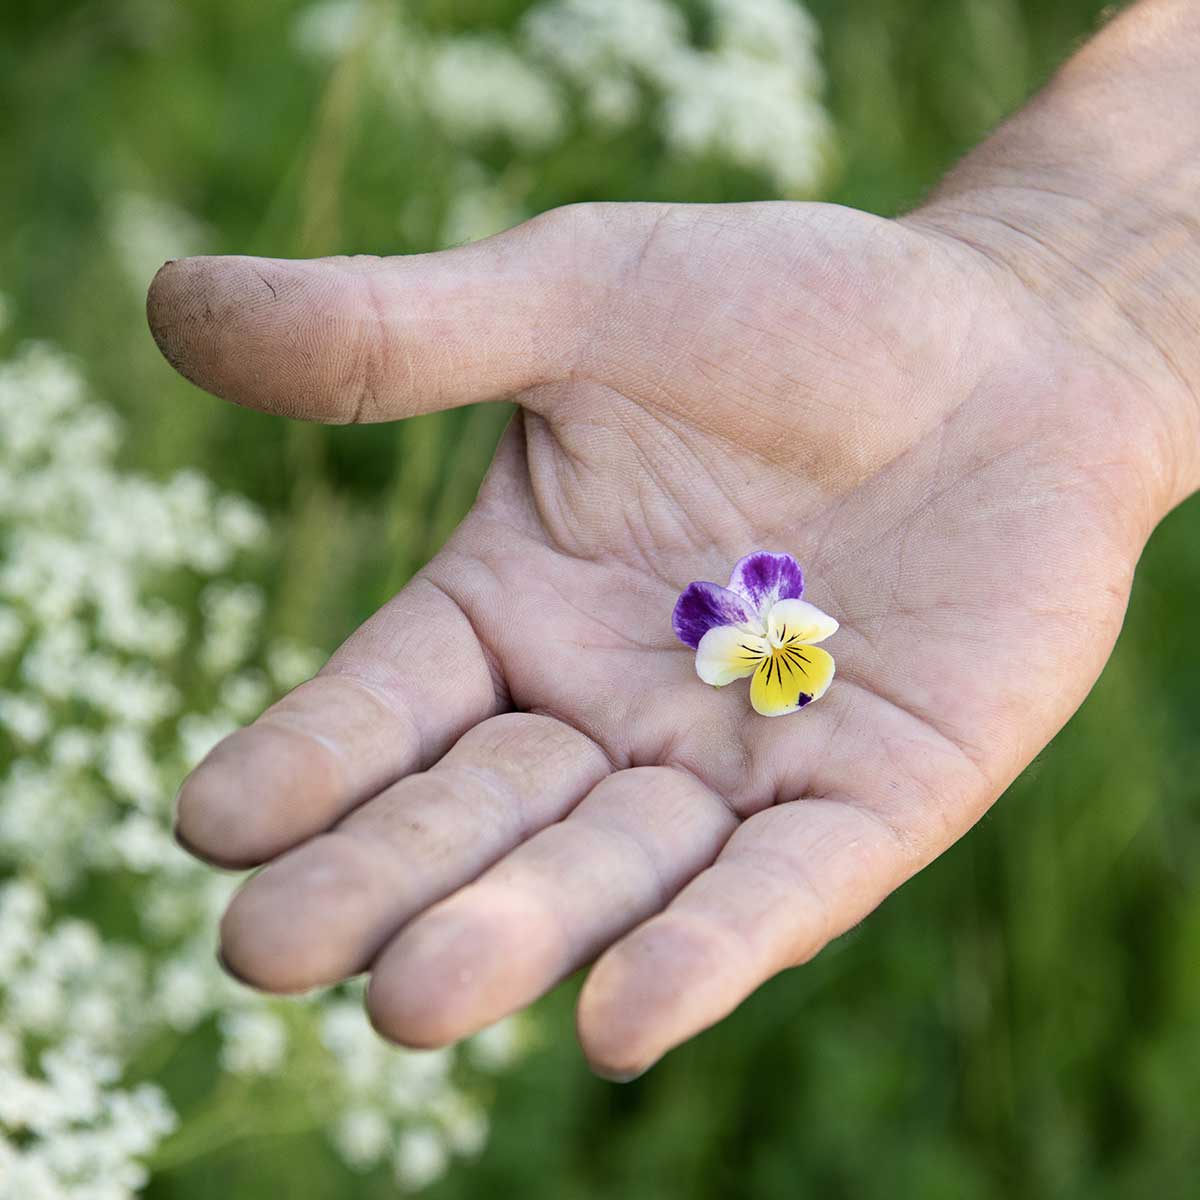 hånd med lille blomst